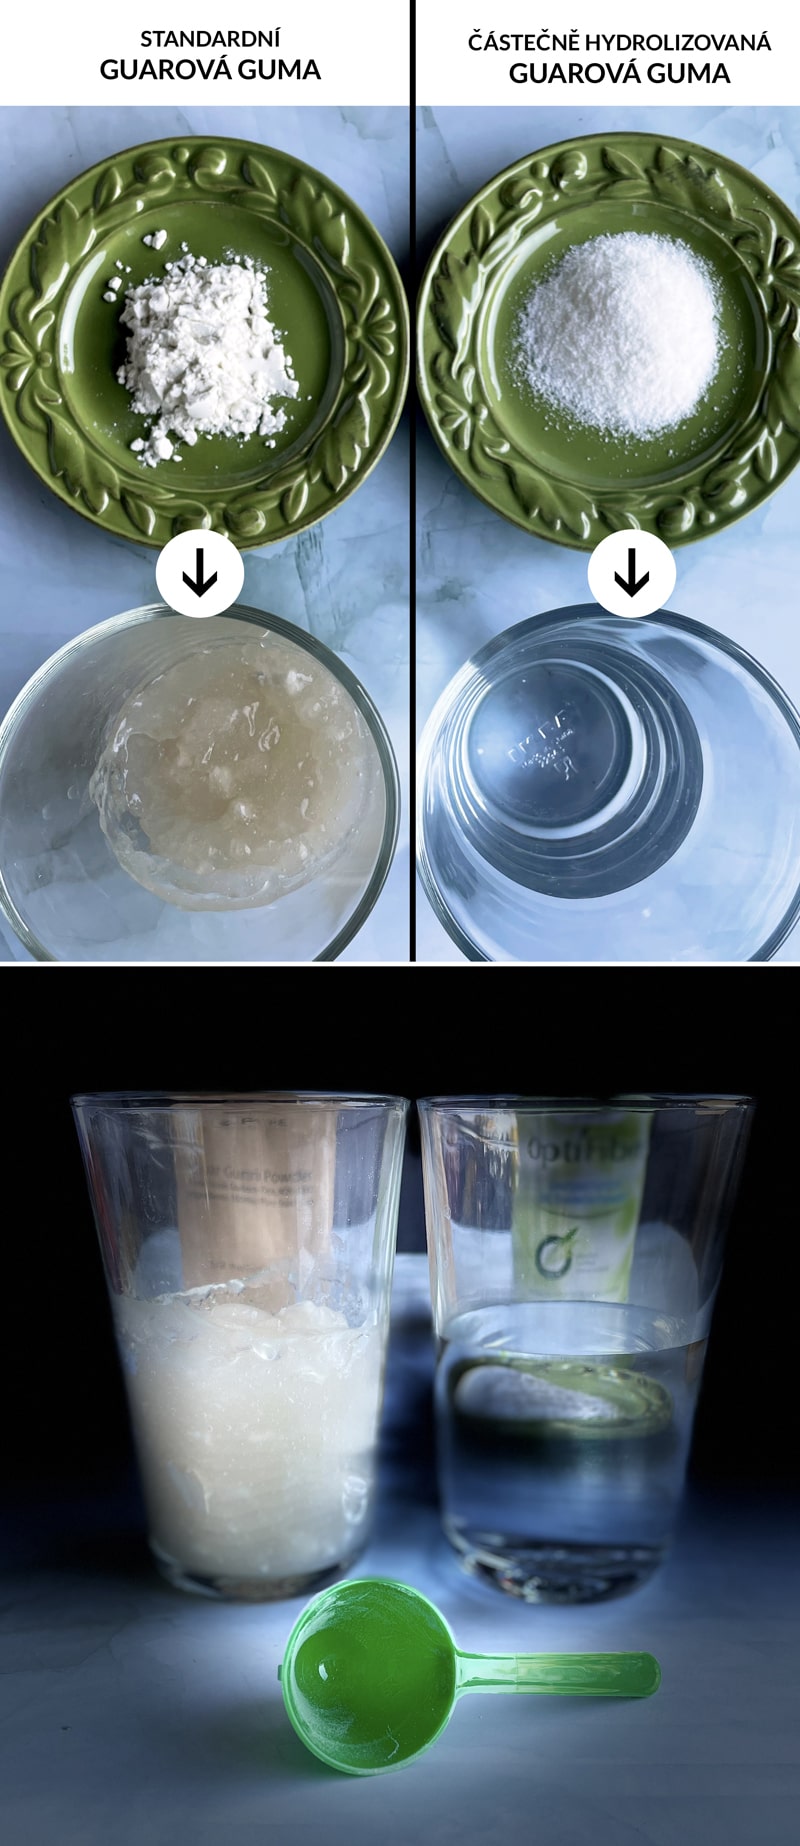 Rozdíl mezi guarovou gumou a částečně hydrolyzovanou guarovou gumou